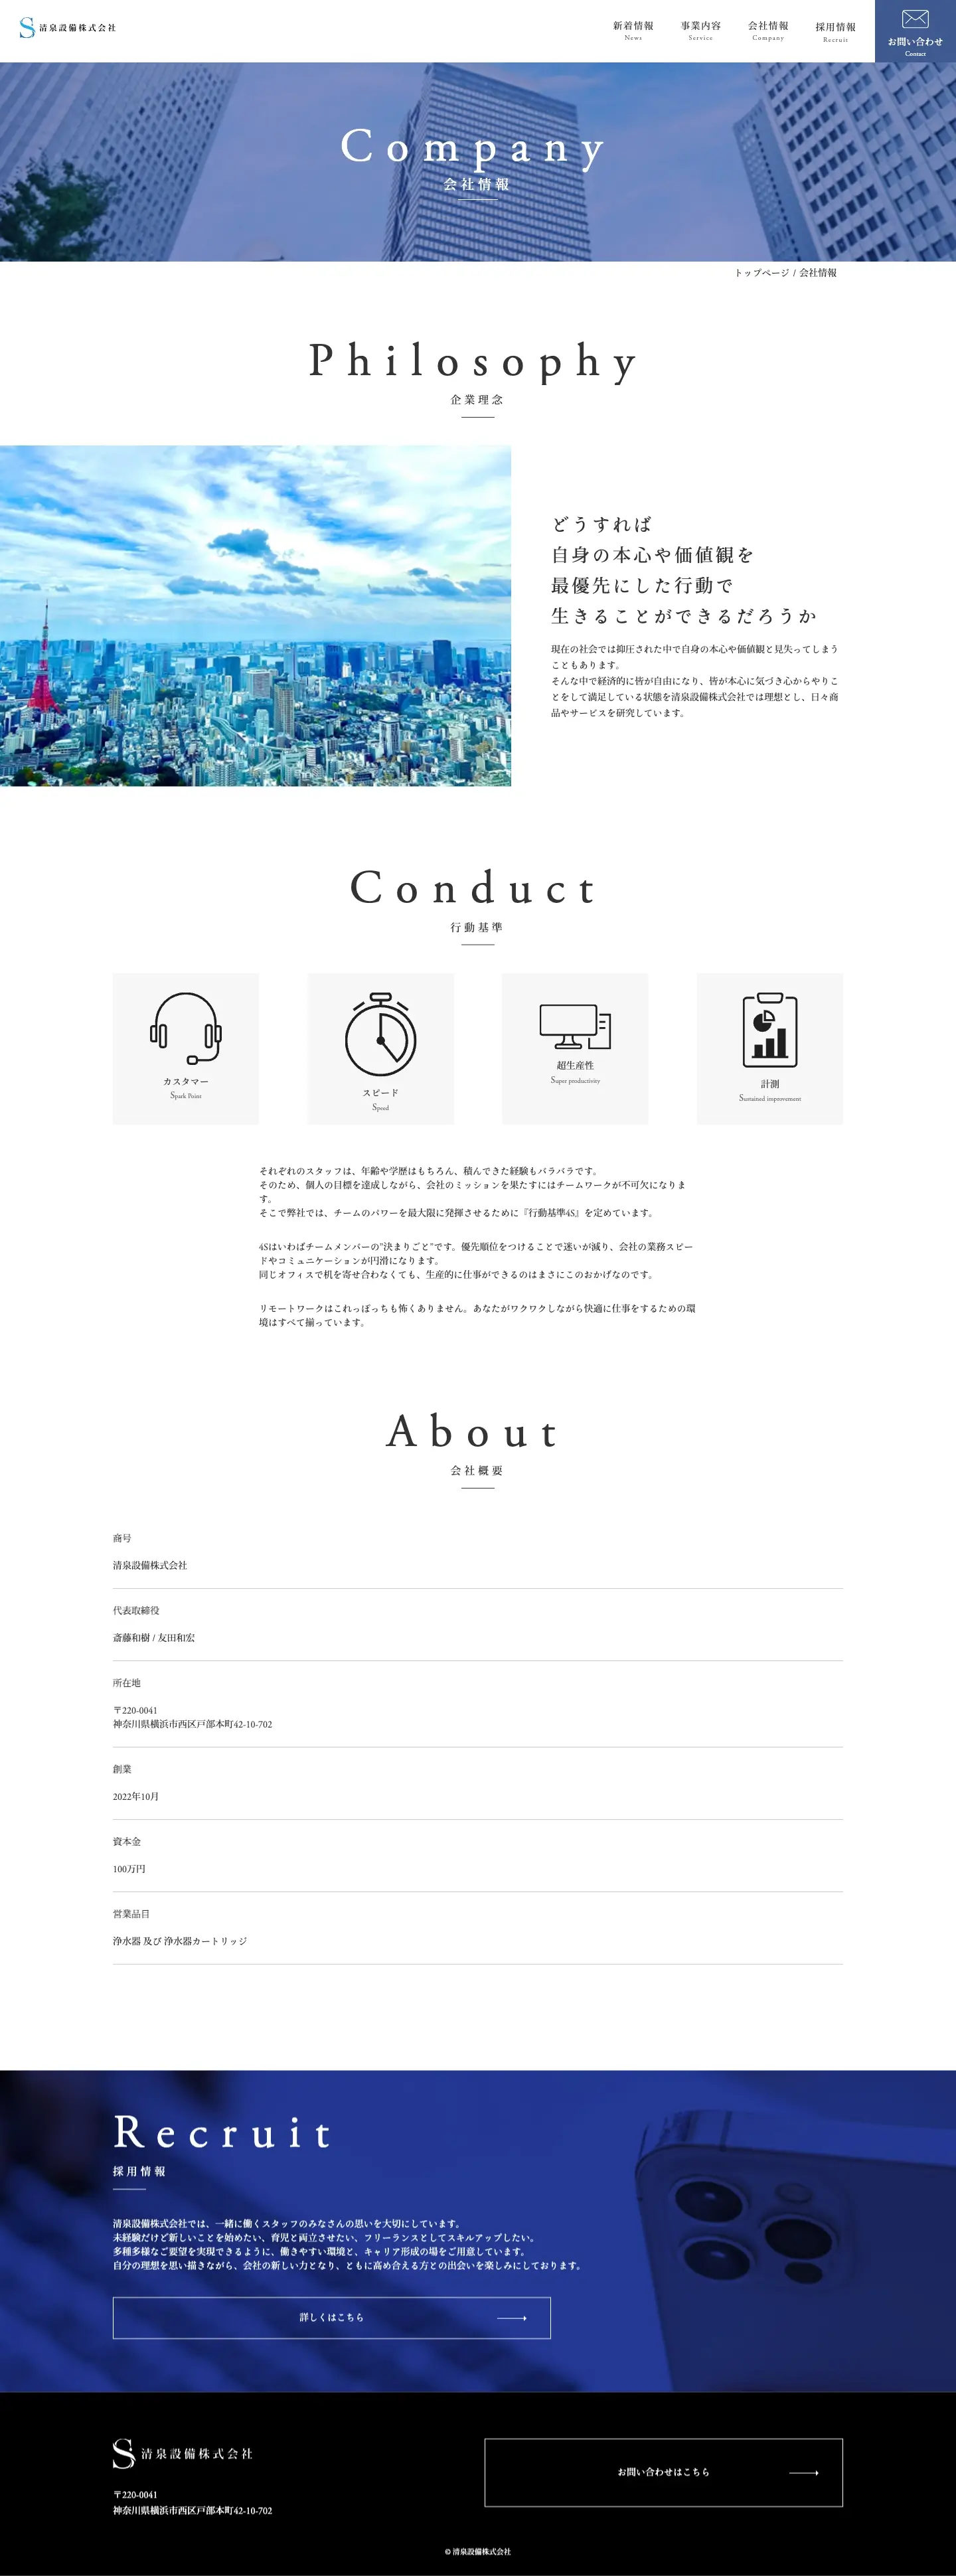 清泉設備株式会社様コーポレートサイト PCデザインカンプ